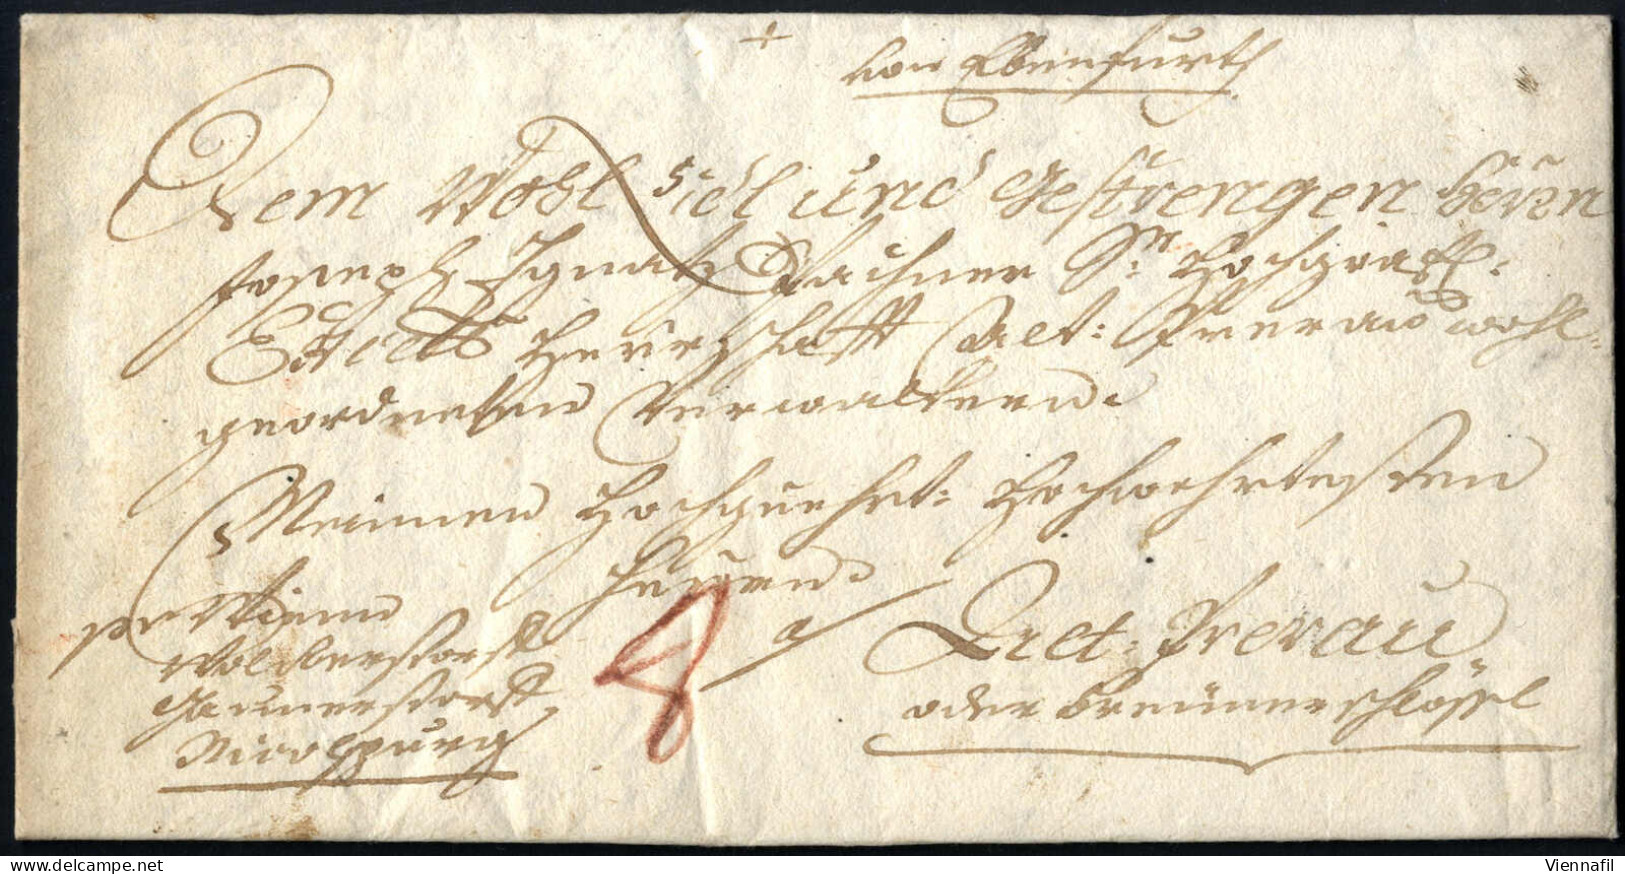 cover 1747/1857, 12 Lose früherer Auktionen, 11 Briefe und zwei Recepissen, meist von Niederösterreich, auch seltenere S